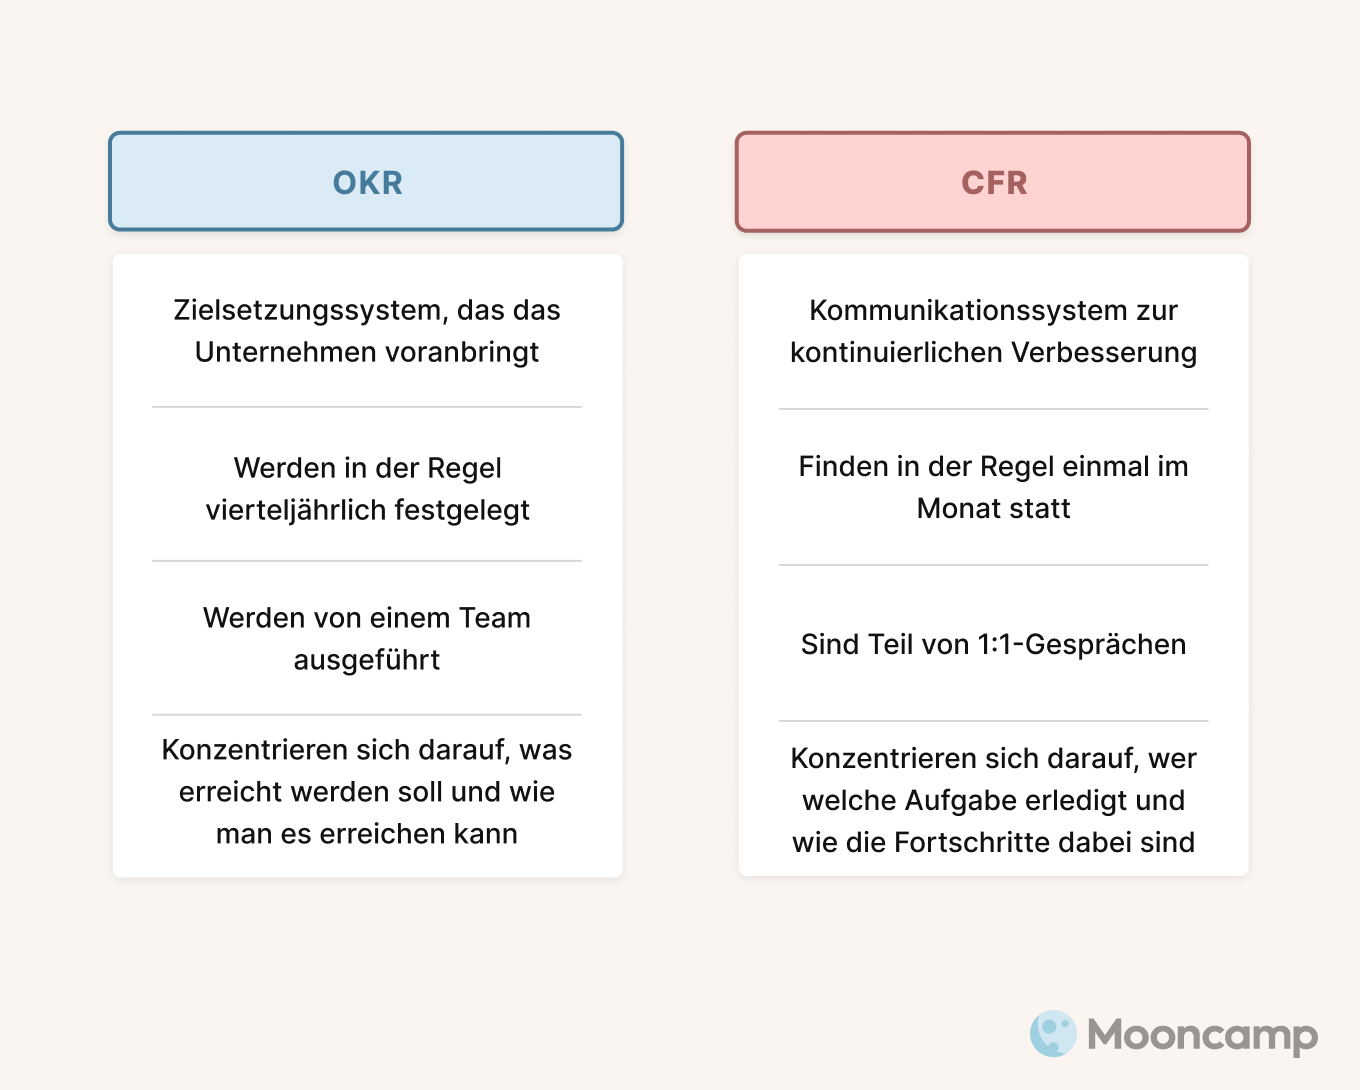 OKR vs CFR